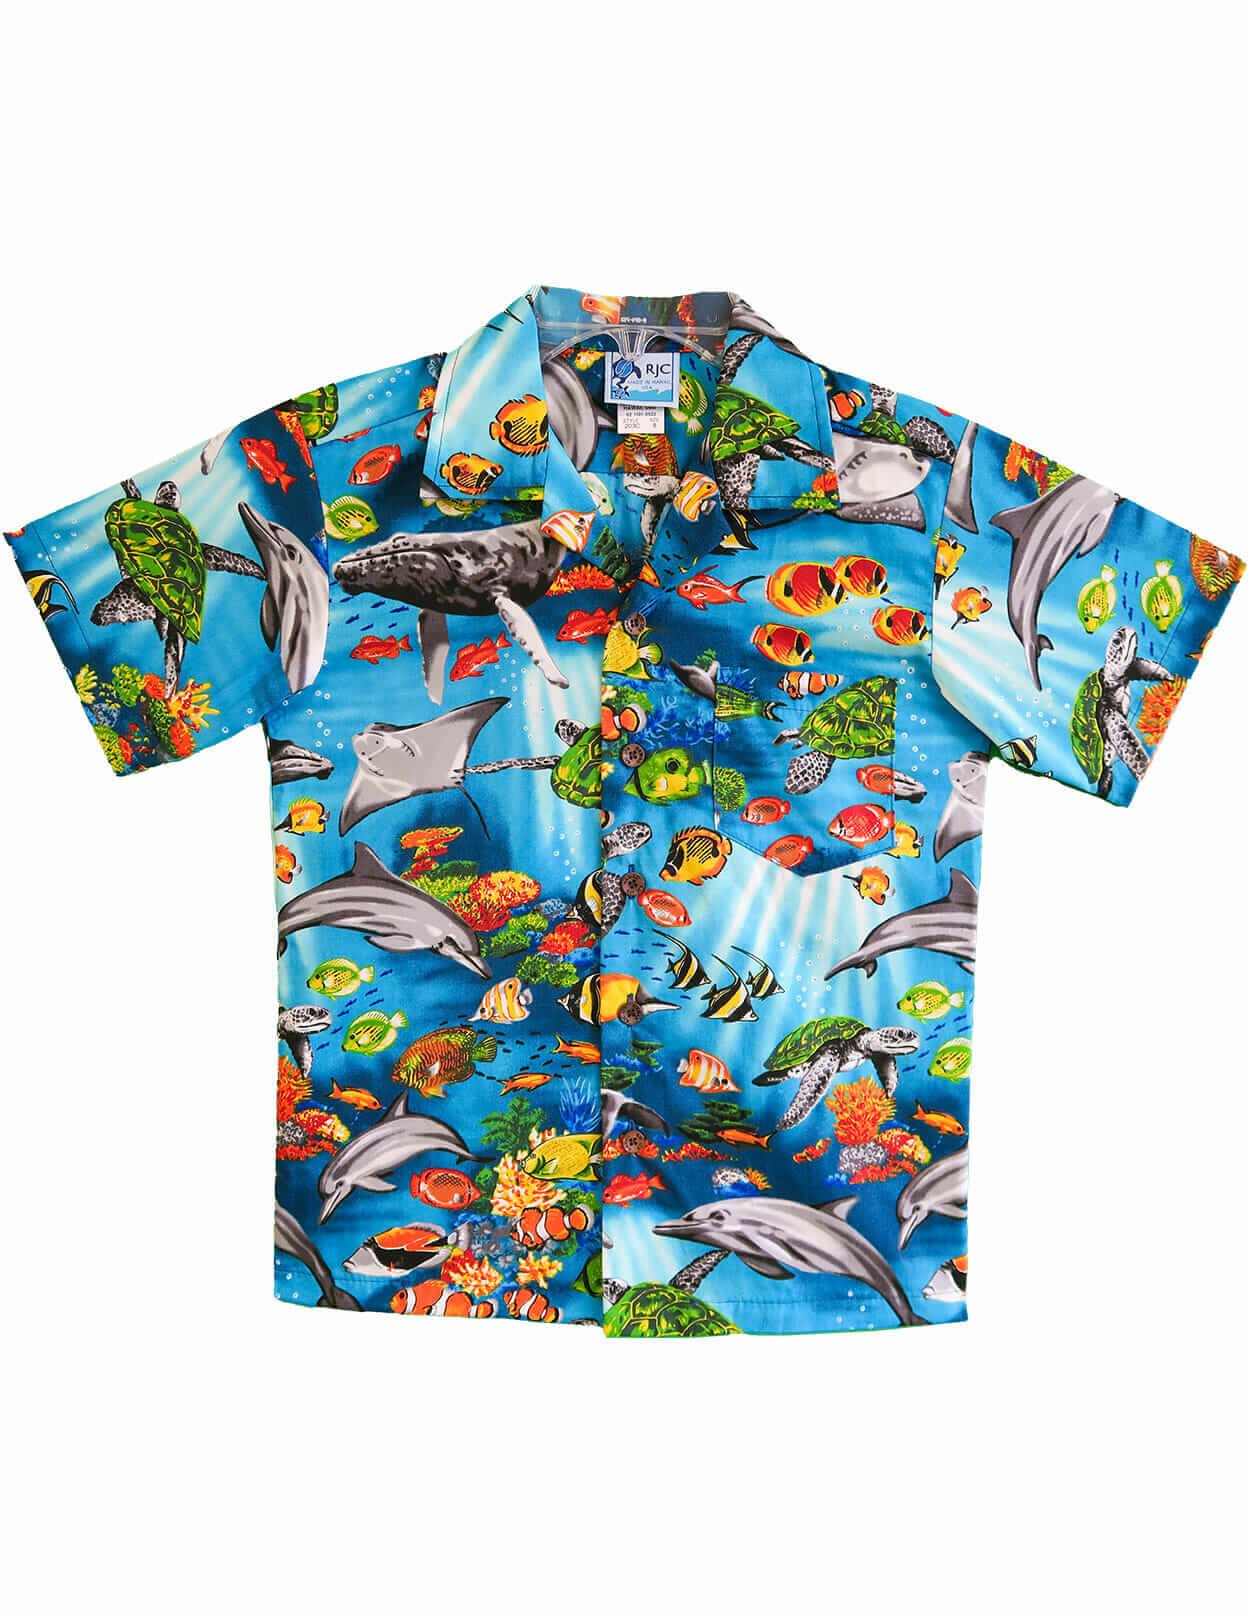 Hawaii Sea life Kids Aloha Shirts Turquoise